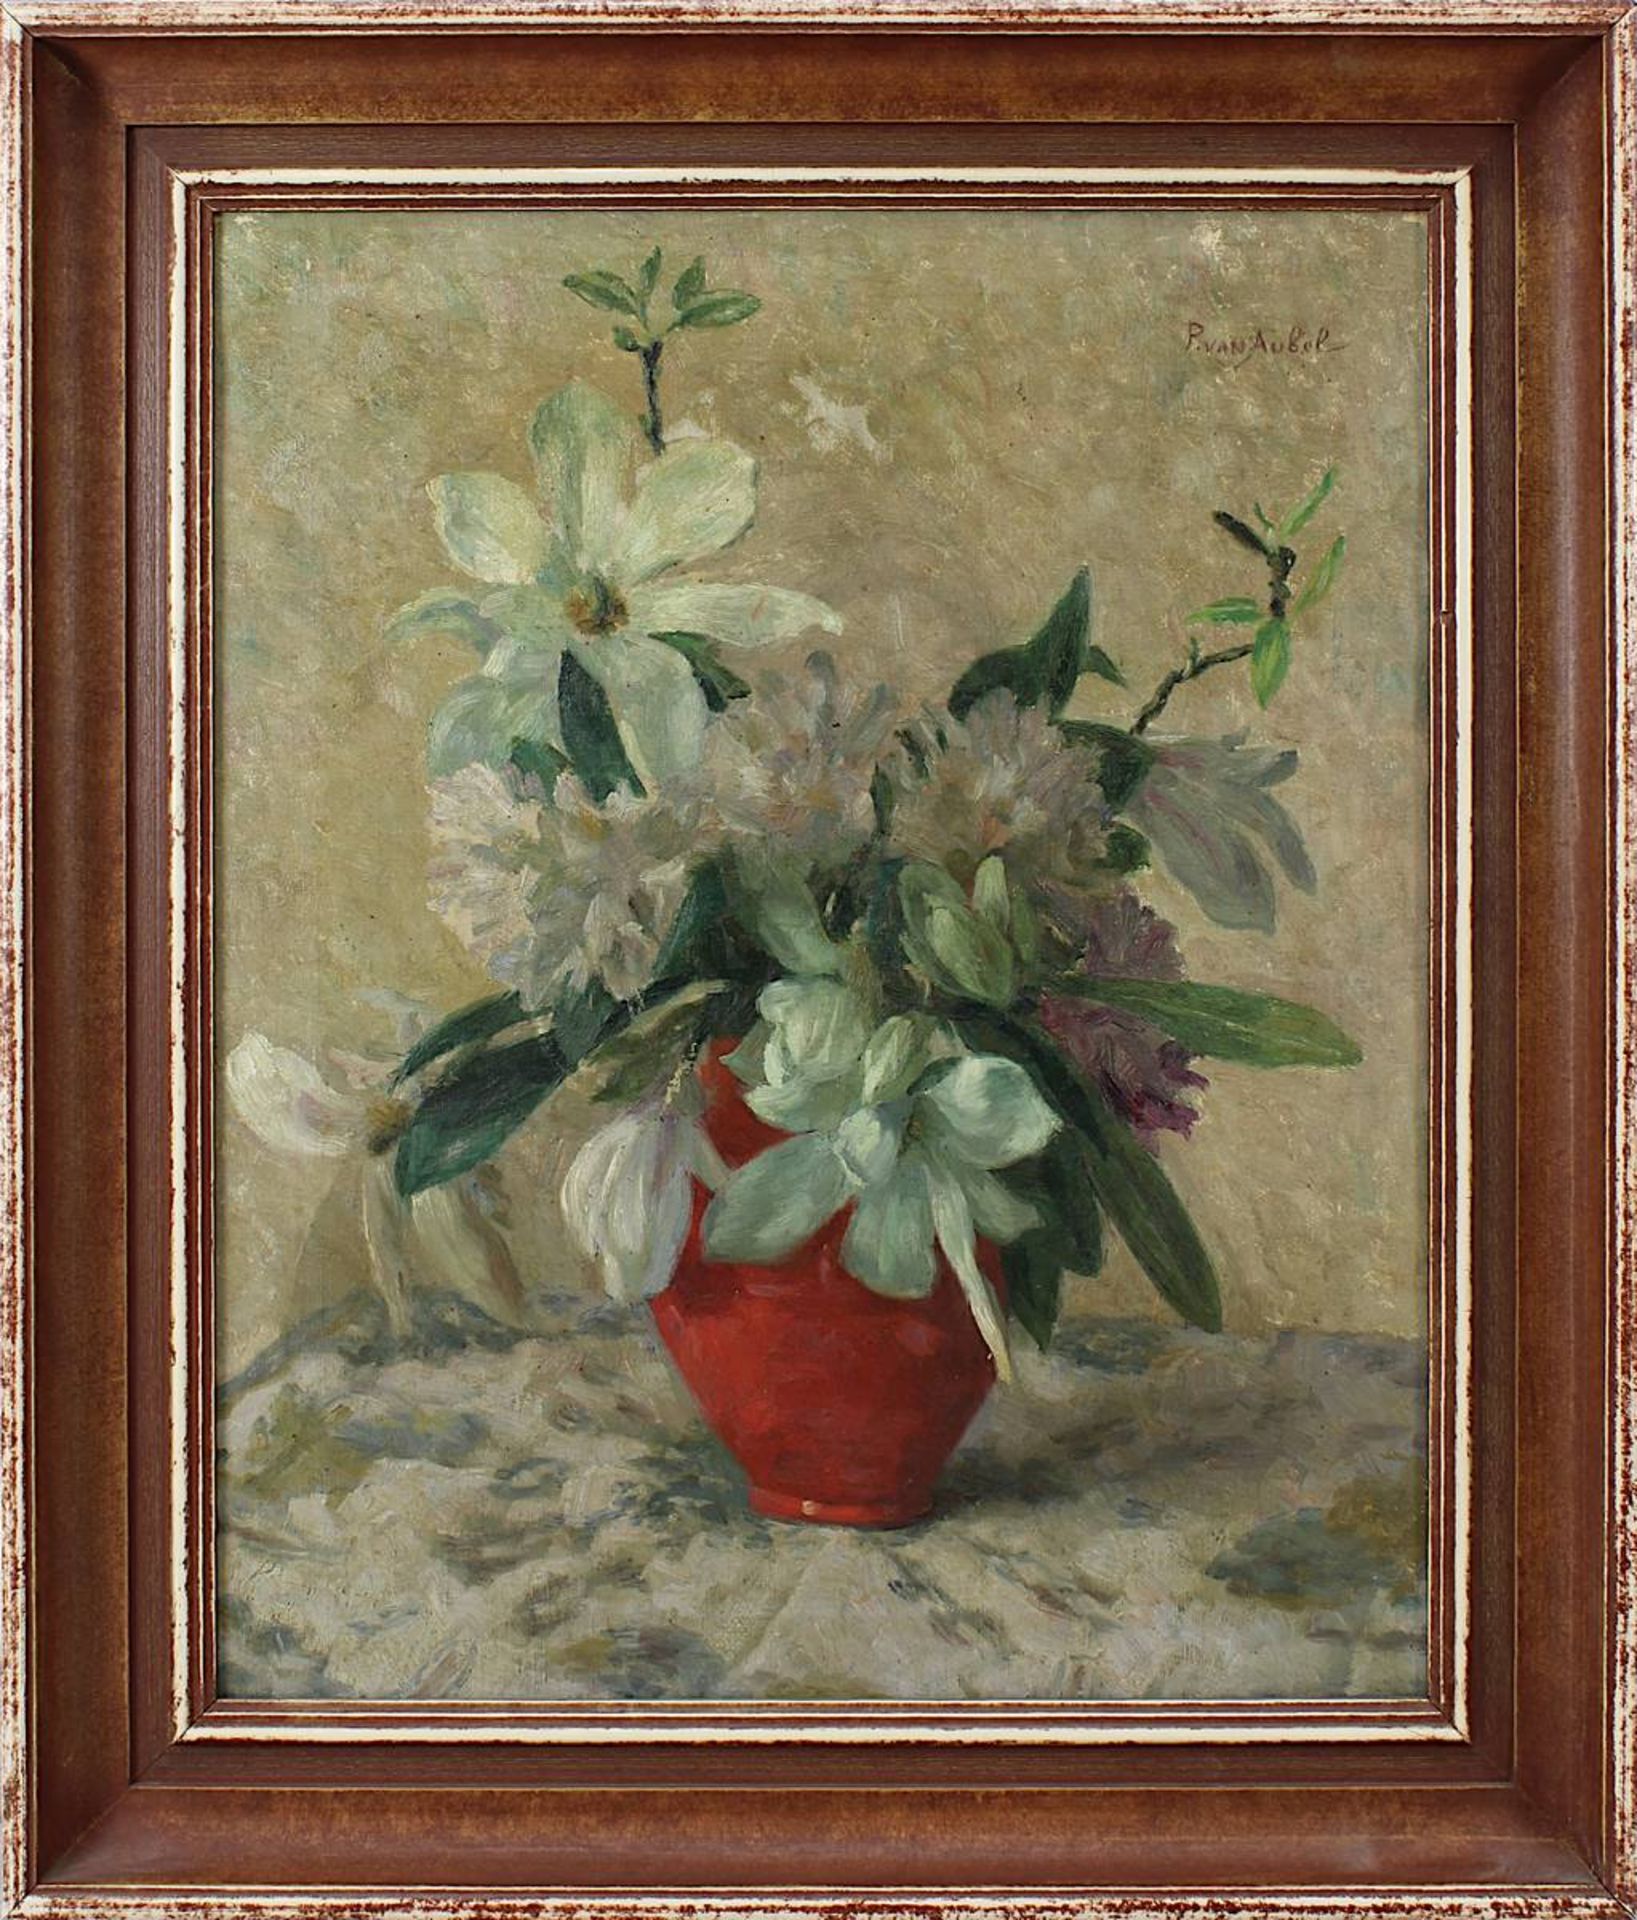 Van Aubel, P. (Niederländsicher Künstler 1. H. 20. Jh.), Vase mit Magnolienzweigen, Öl auf Leinwand,